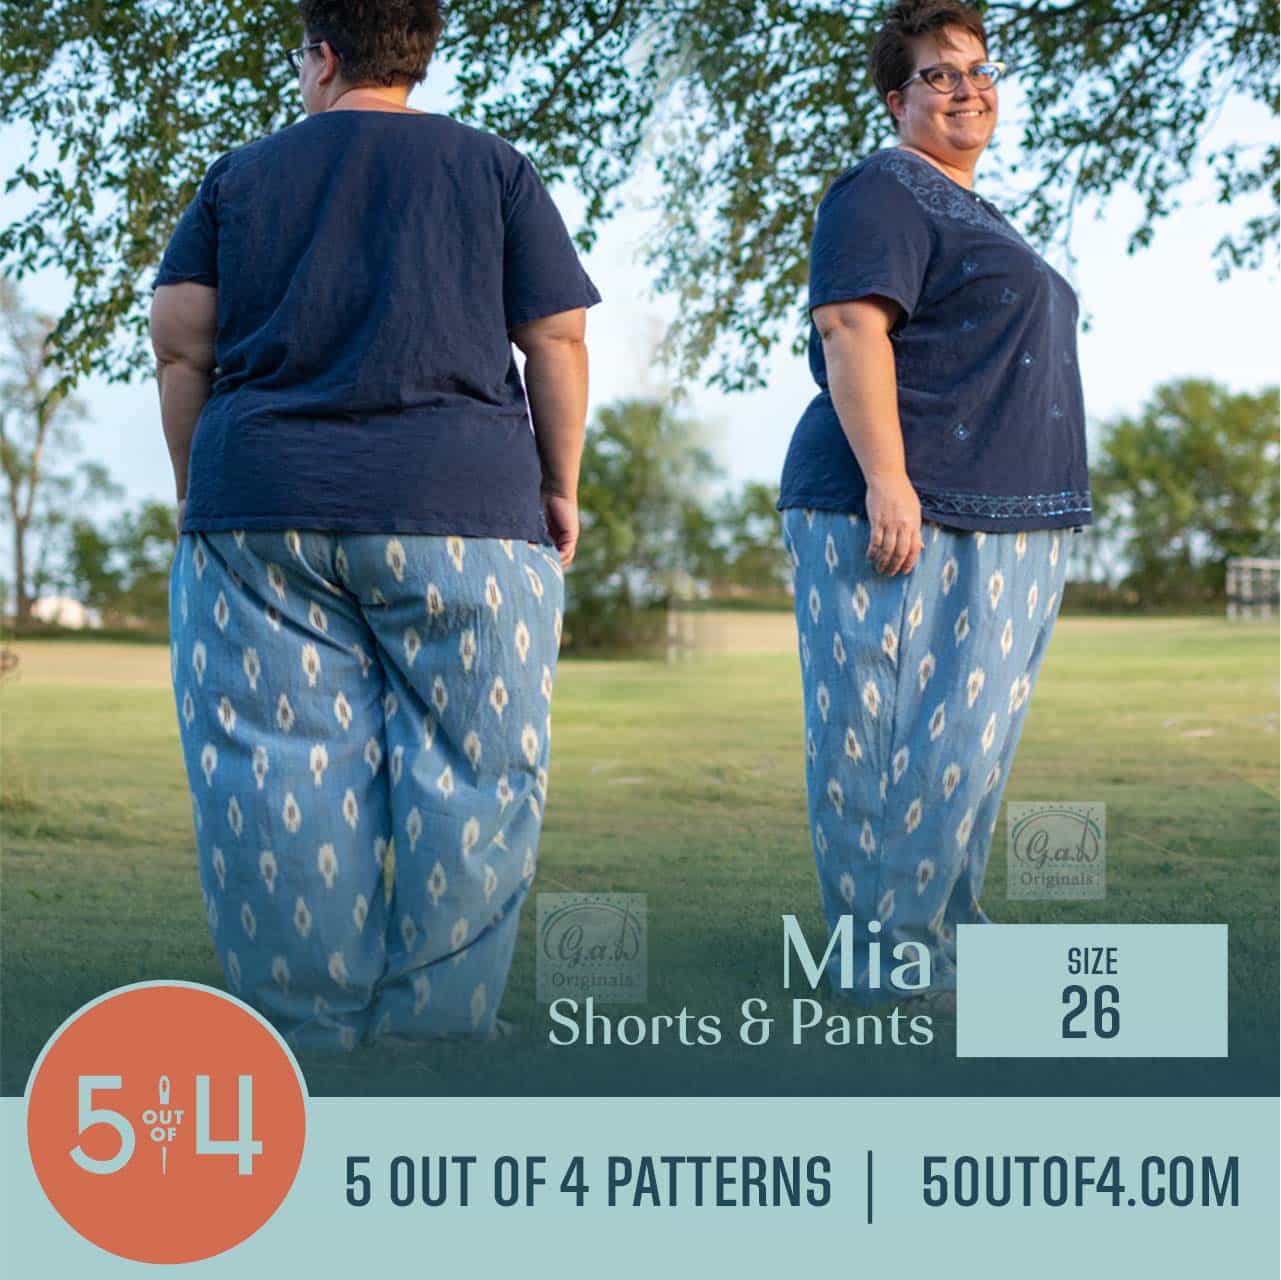 Mia Shorts and Pants